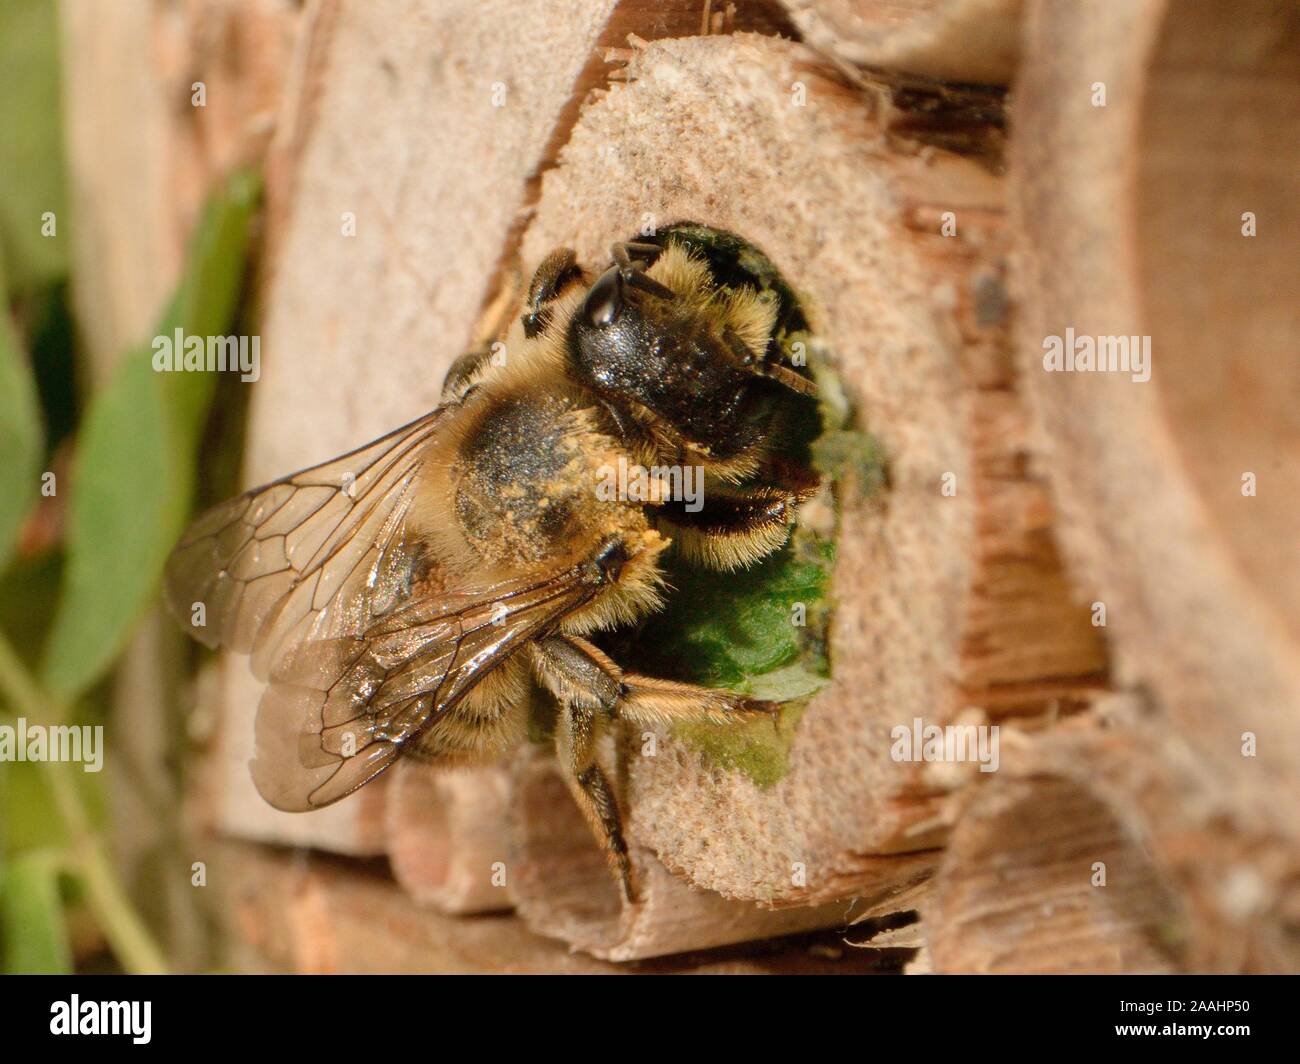 Blatt-Cutter/Rose-Cutter Bee (Megachile willughbiella) mit einem kreisförmigen Abschnitt von Rose Blatt sein Nest in einem Bambus Rohr in ein Insekt hotel Großbritannien Dichtung Stockfoto